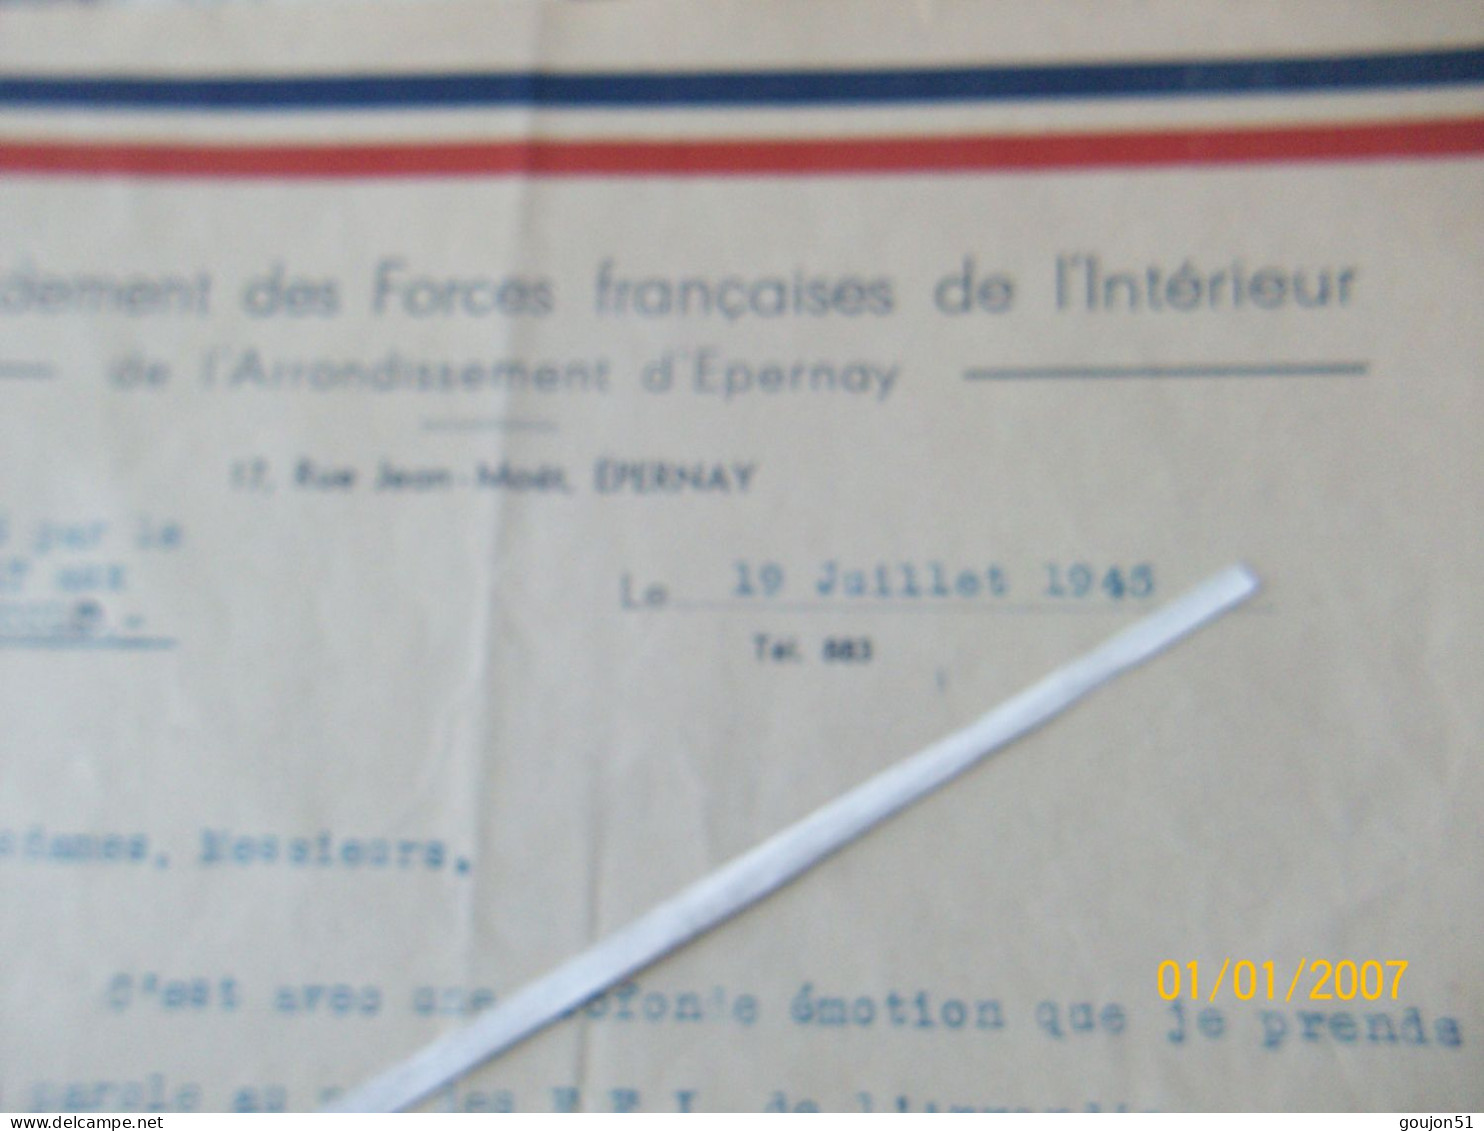 Lettre Commandement Des Forces Française De L' Intérieur De L'Arrondissement D'Epernay Discours Prononcé Par Le Capitain - Documenten